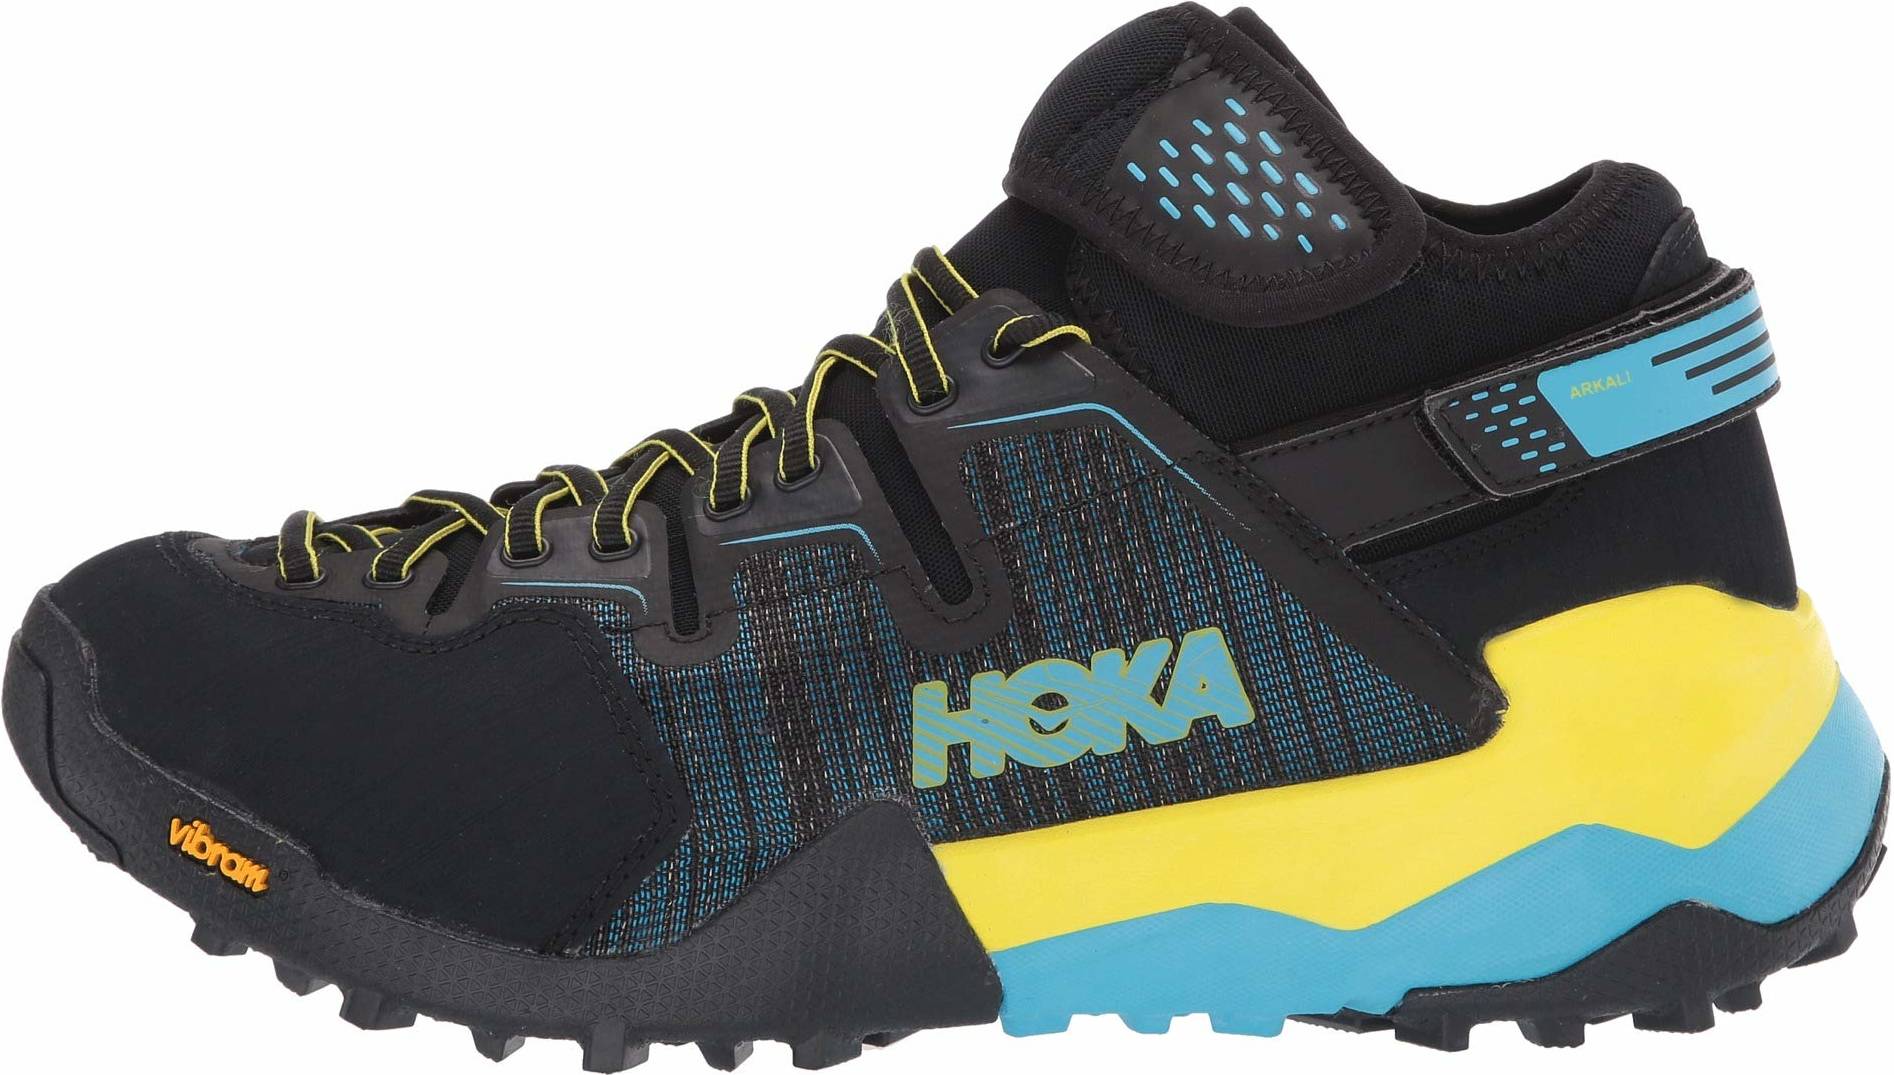 Hoka One One Hiking Shoes (7 Models in 